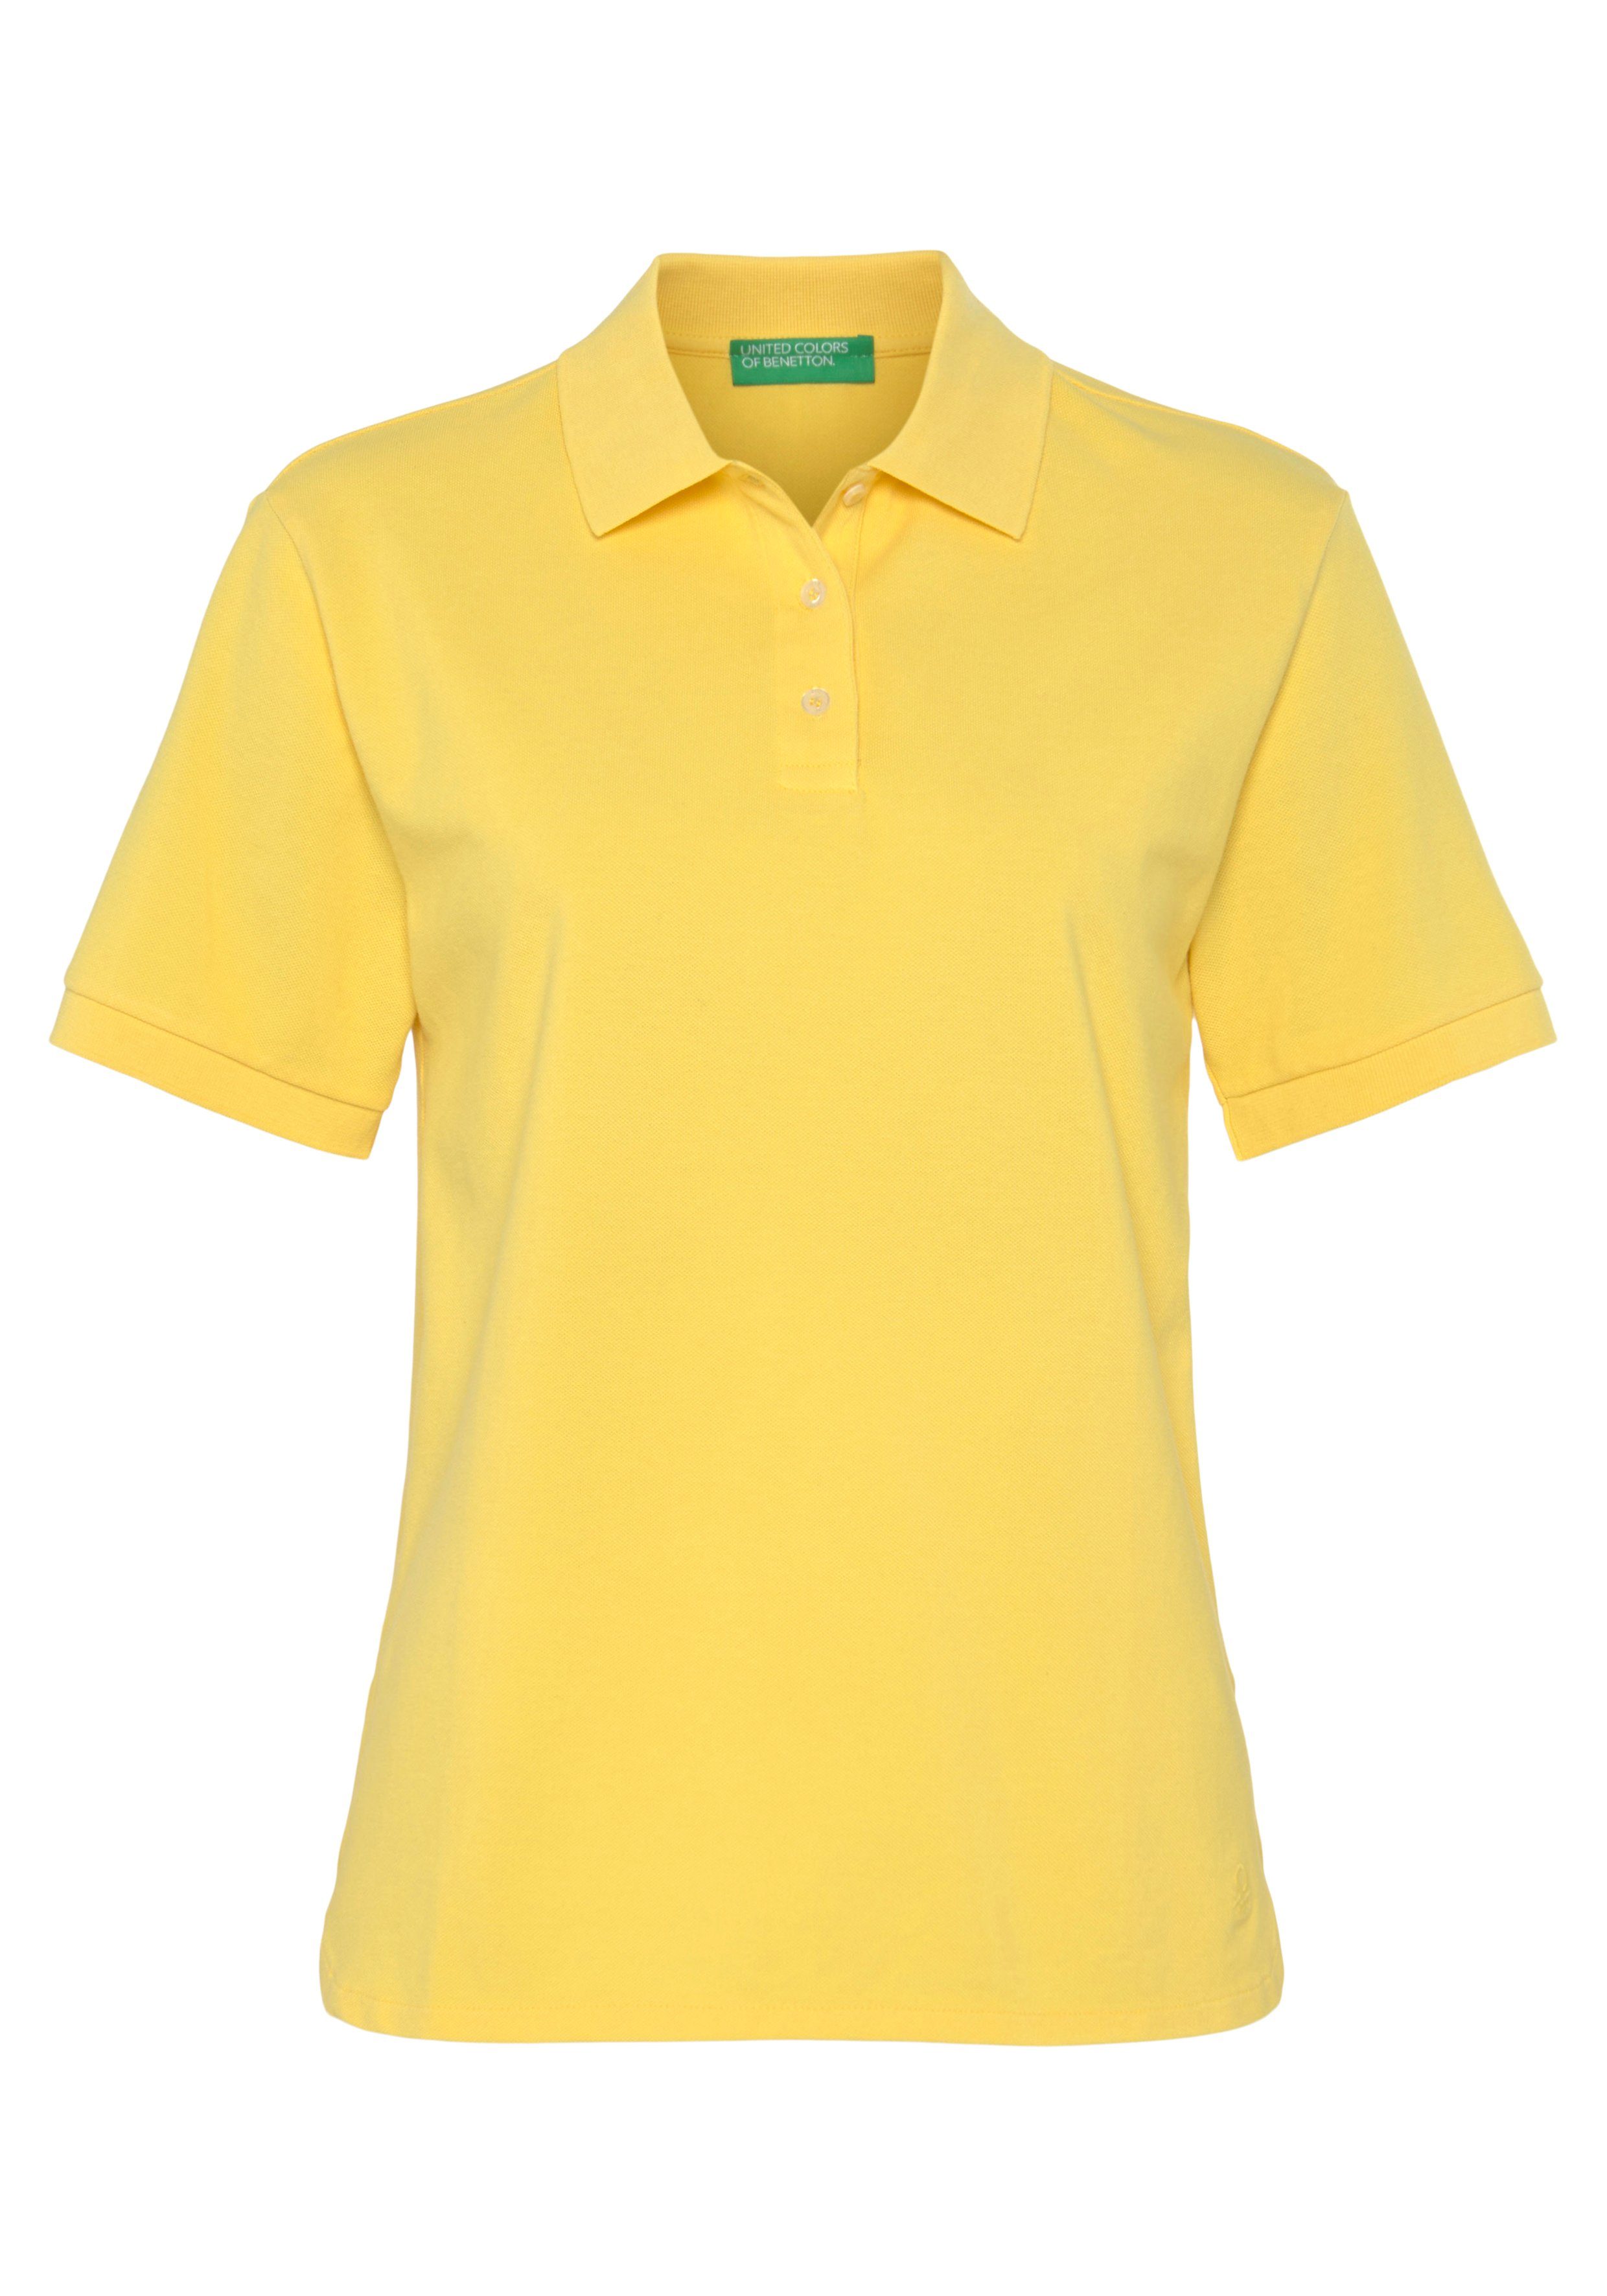 perlmuttfarbenen Colors Poloshirt Knöpfen of gelb Benetton mit United